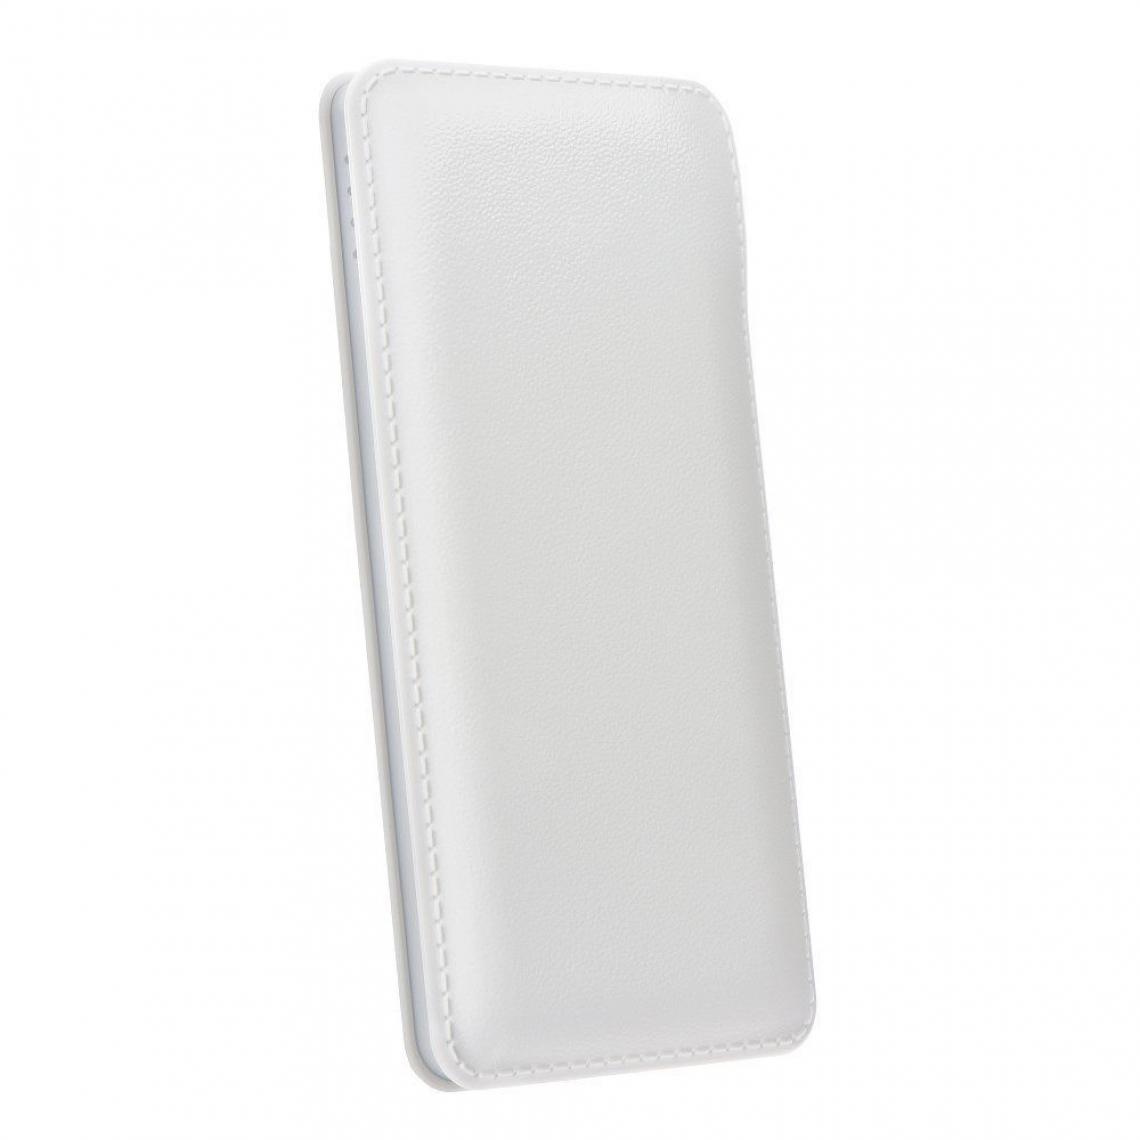 Ozzzo - Chargeur batterie externe 20000 mAh powerbank ozzzo blanc pour SAMSUNG G935 Galaxy S7 Edge - Autres accessoires smartphone